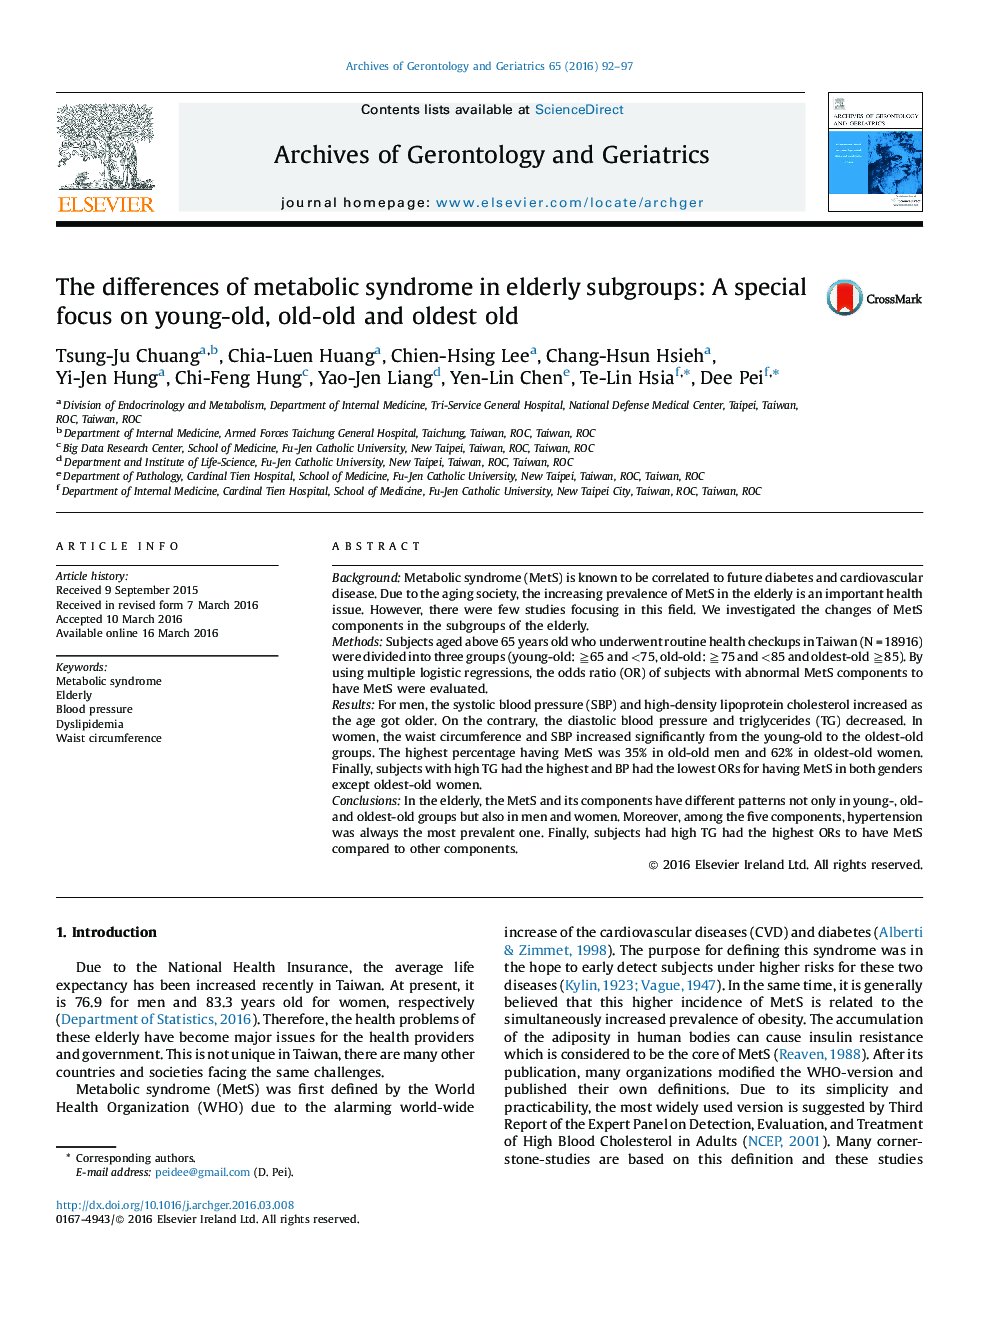 تفاوت های سندرم متابولیک در زیرگروه سالخوردگان: تمرکز ویژه بر جوانان، میانسالان و سالمندان